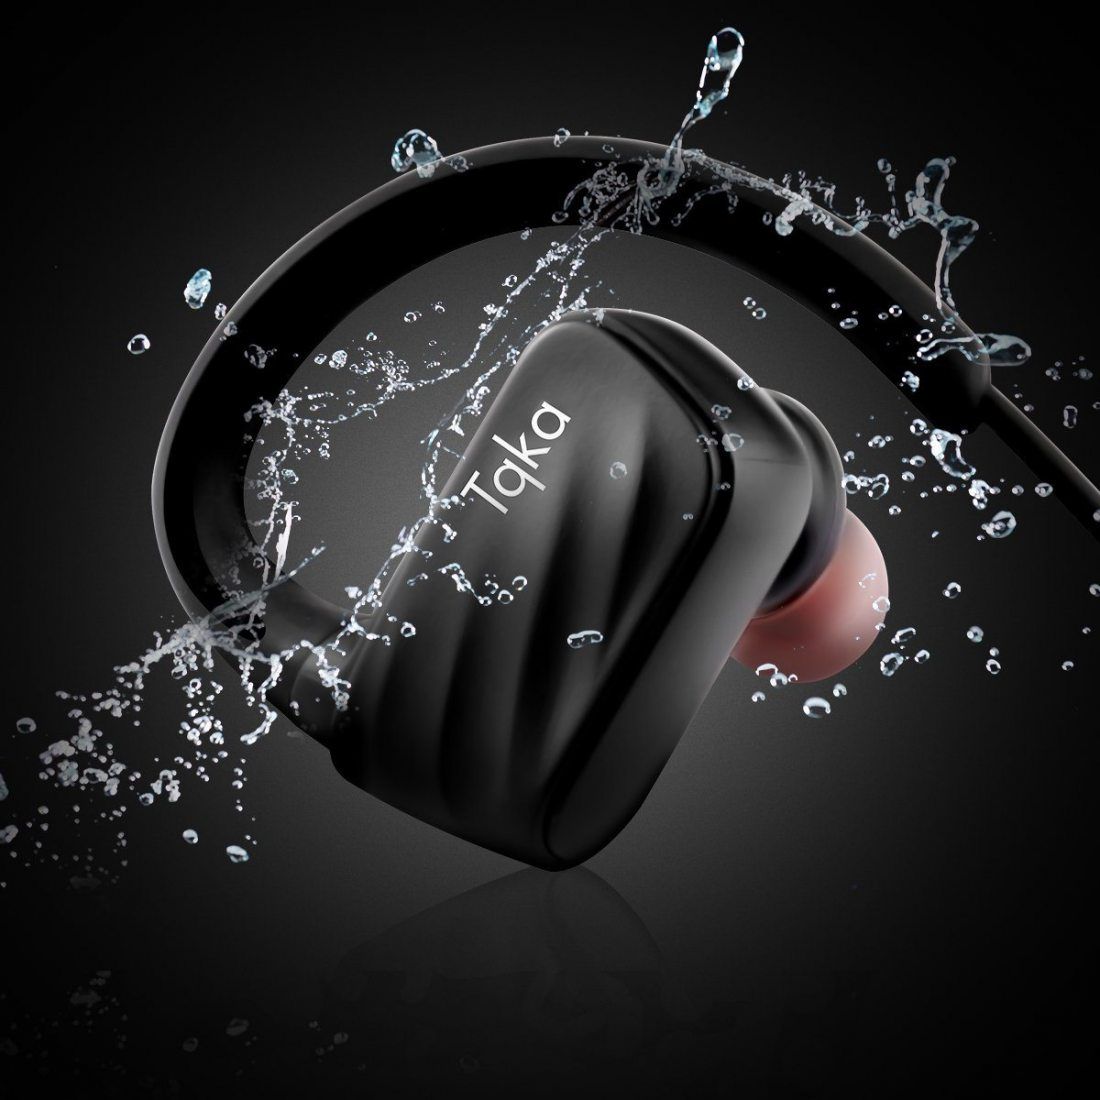 Tqka Écouteurs Bluetooth, Écouteurs Sans fil Imperméables IP67, Écouteurs Bluetooth V4.1 HD Stéréo avec Micro avec 8 heures d